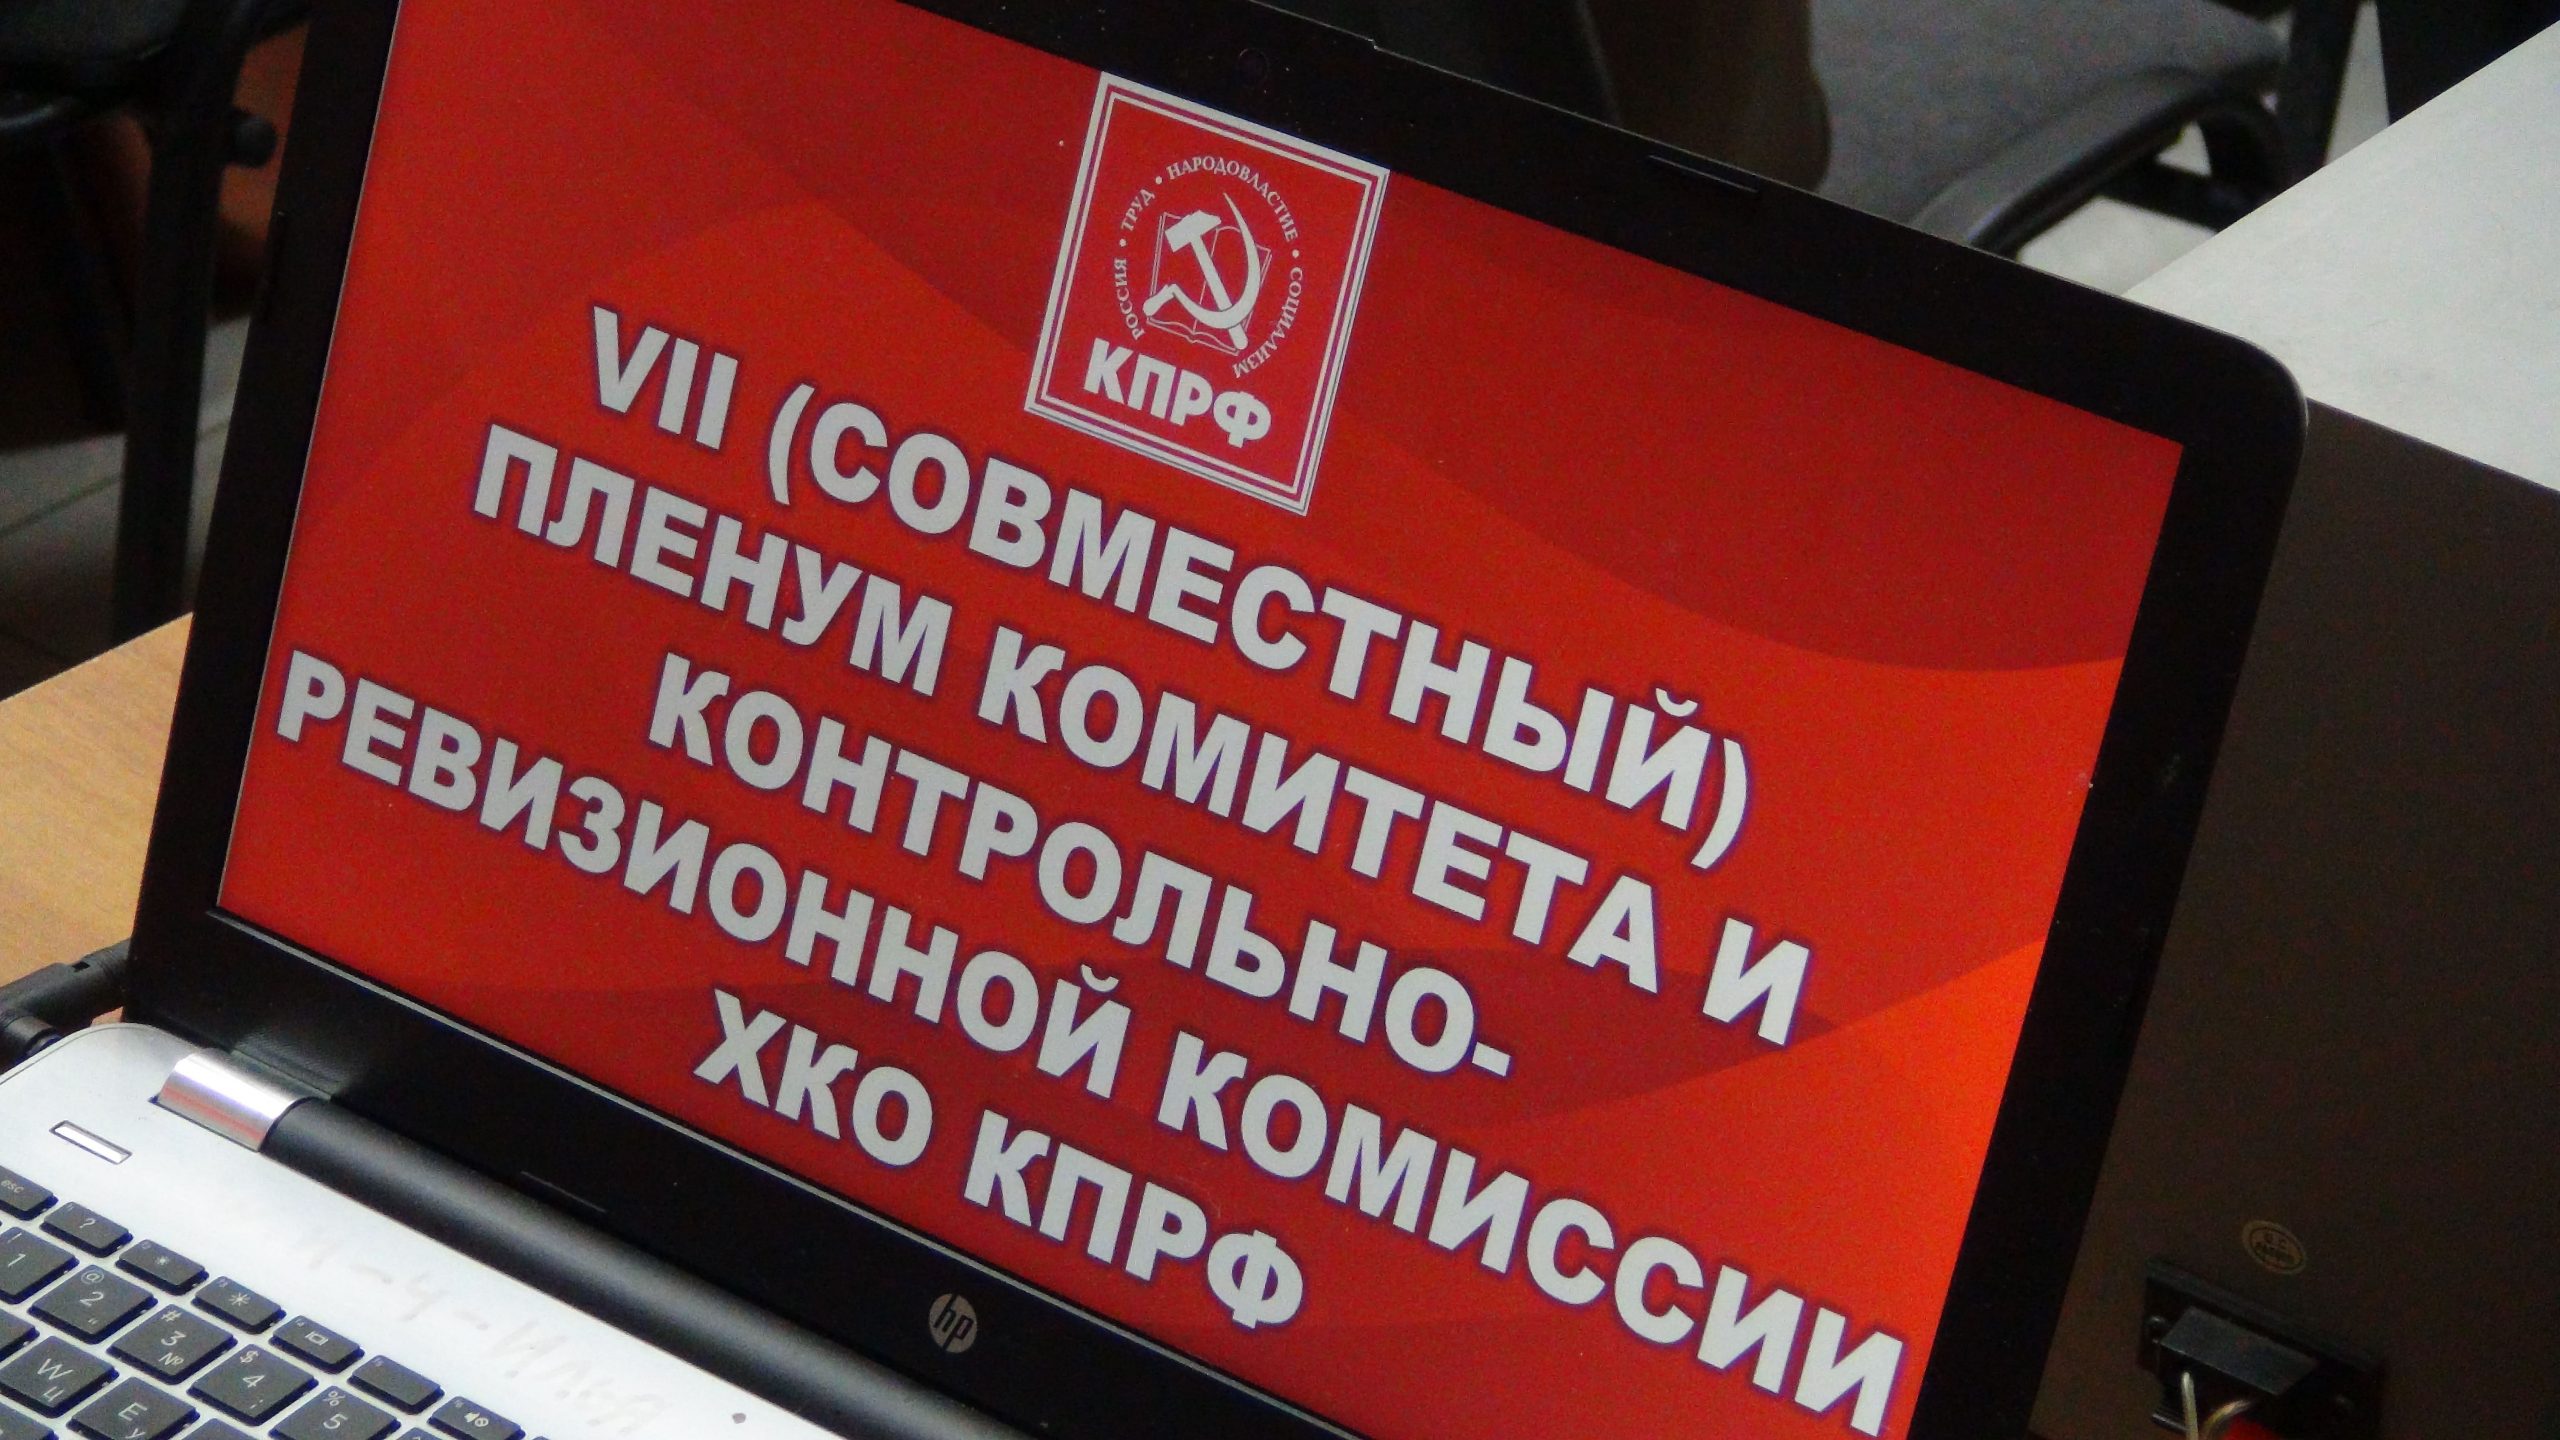 КПРФ за свою экономику. Поздравление секретарю КПРФ. 3 июня 2019 хабаровск